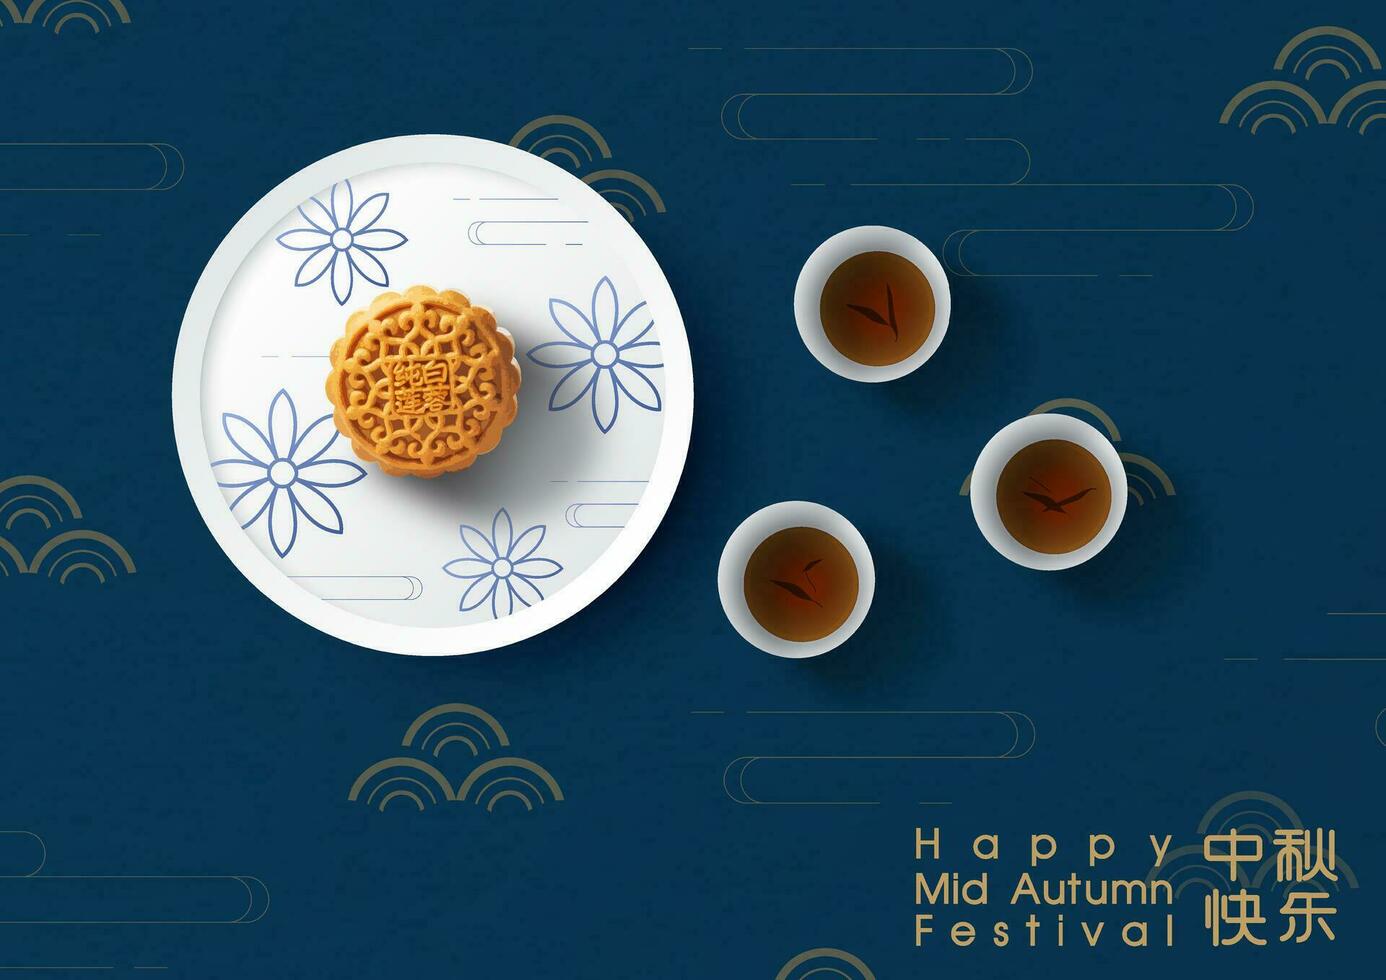 kinesisk måne kakor på vit tallrik med te koppar och lydelse av även på kinesisk element mönster och mörk blå bakgrund. kinesisk texter är menande Lycklig mitten höst festival i engelsk. vektor